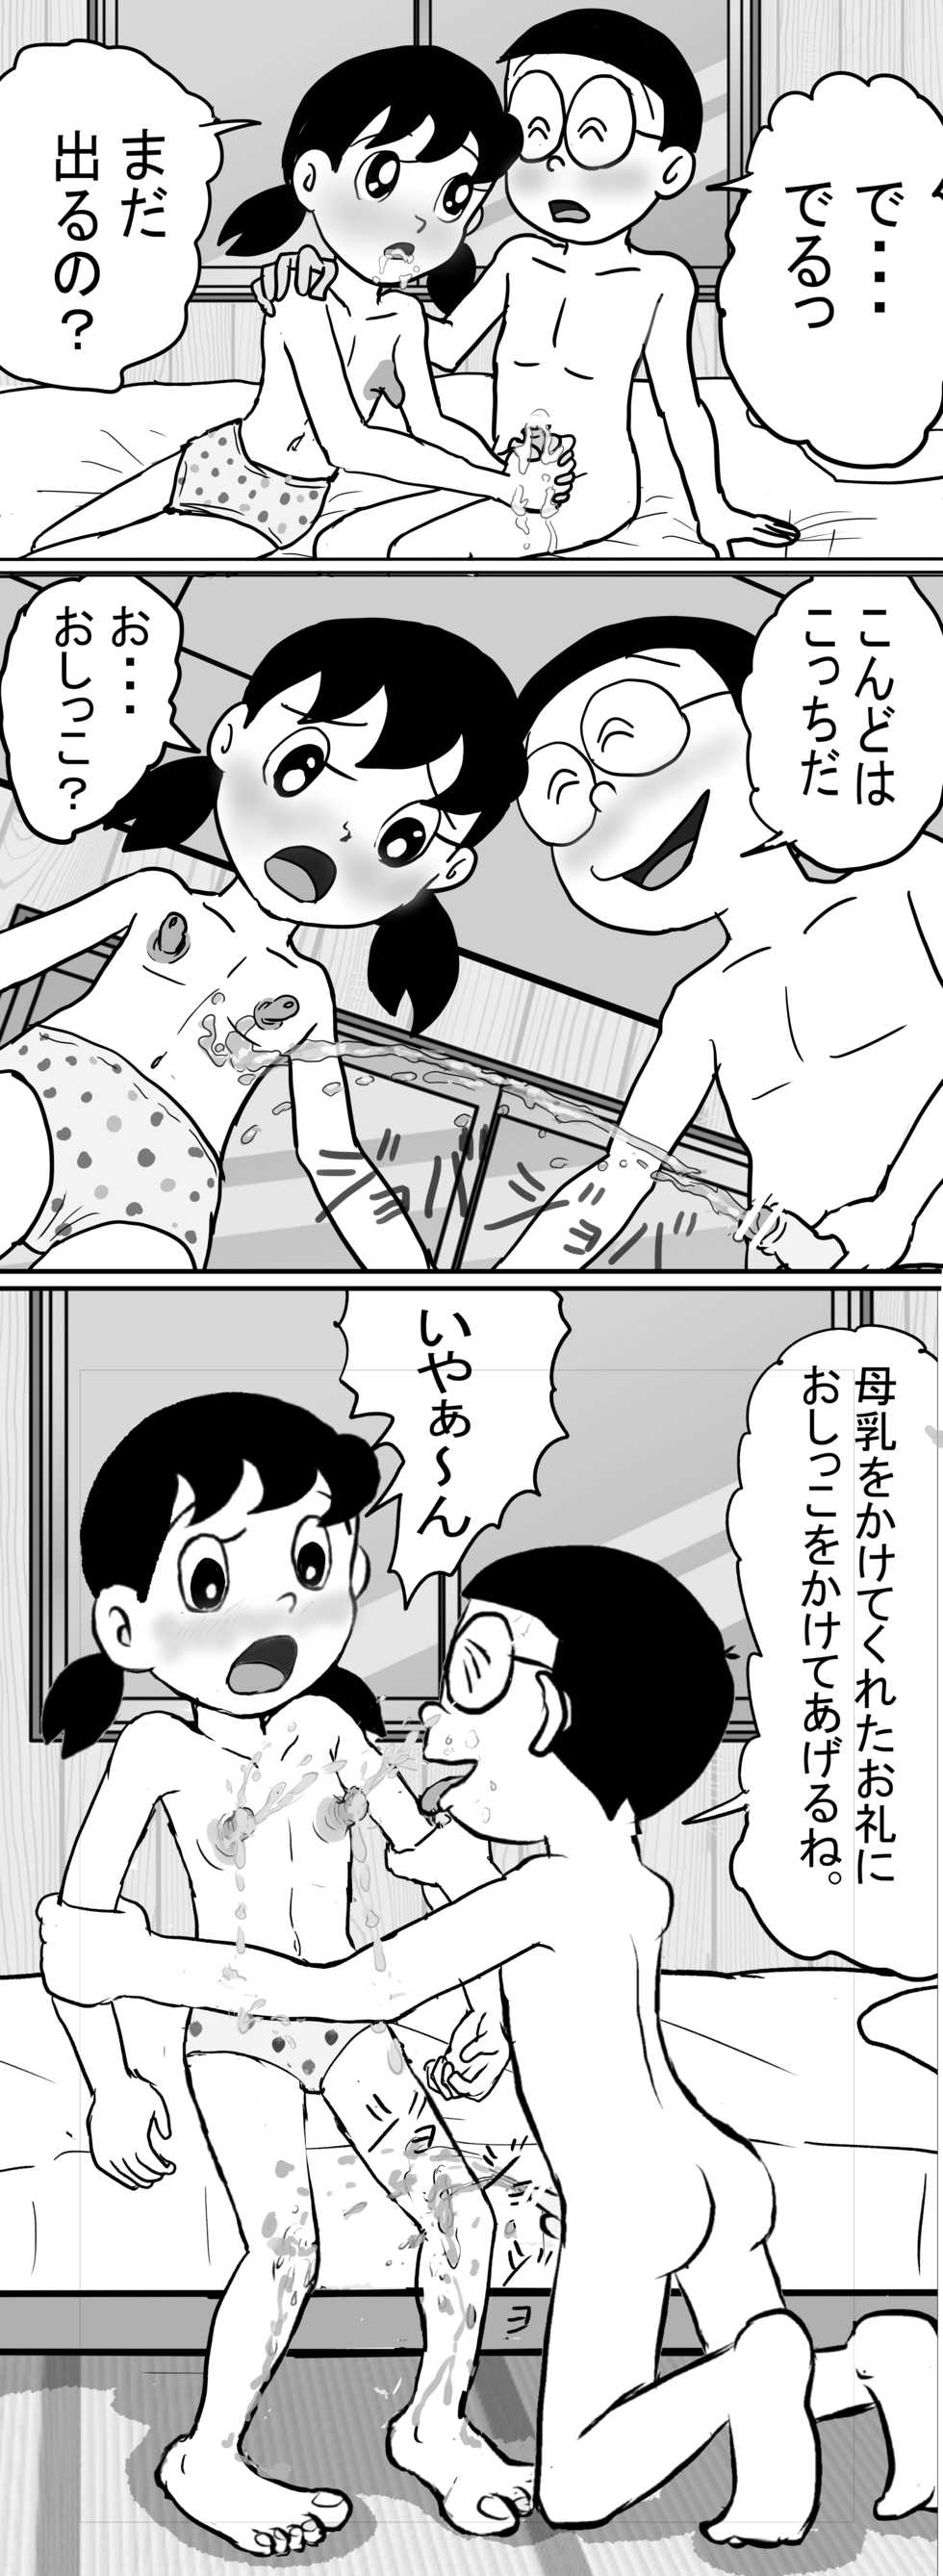 (442b) Sizuemon (Doraemon) - Page 22